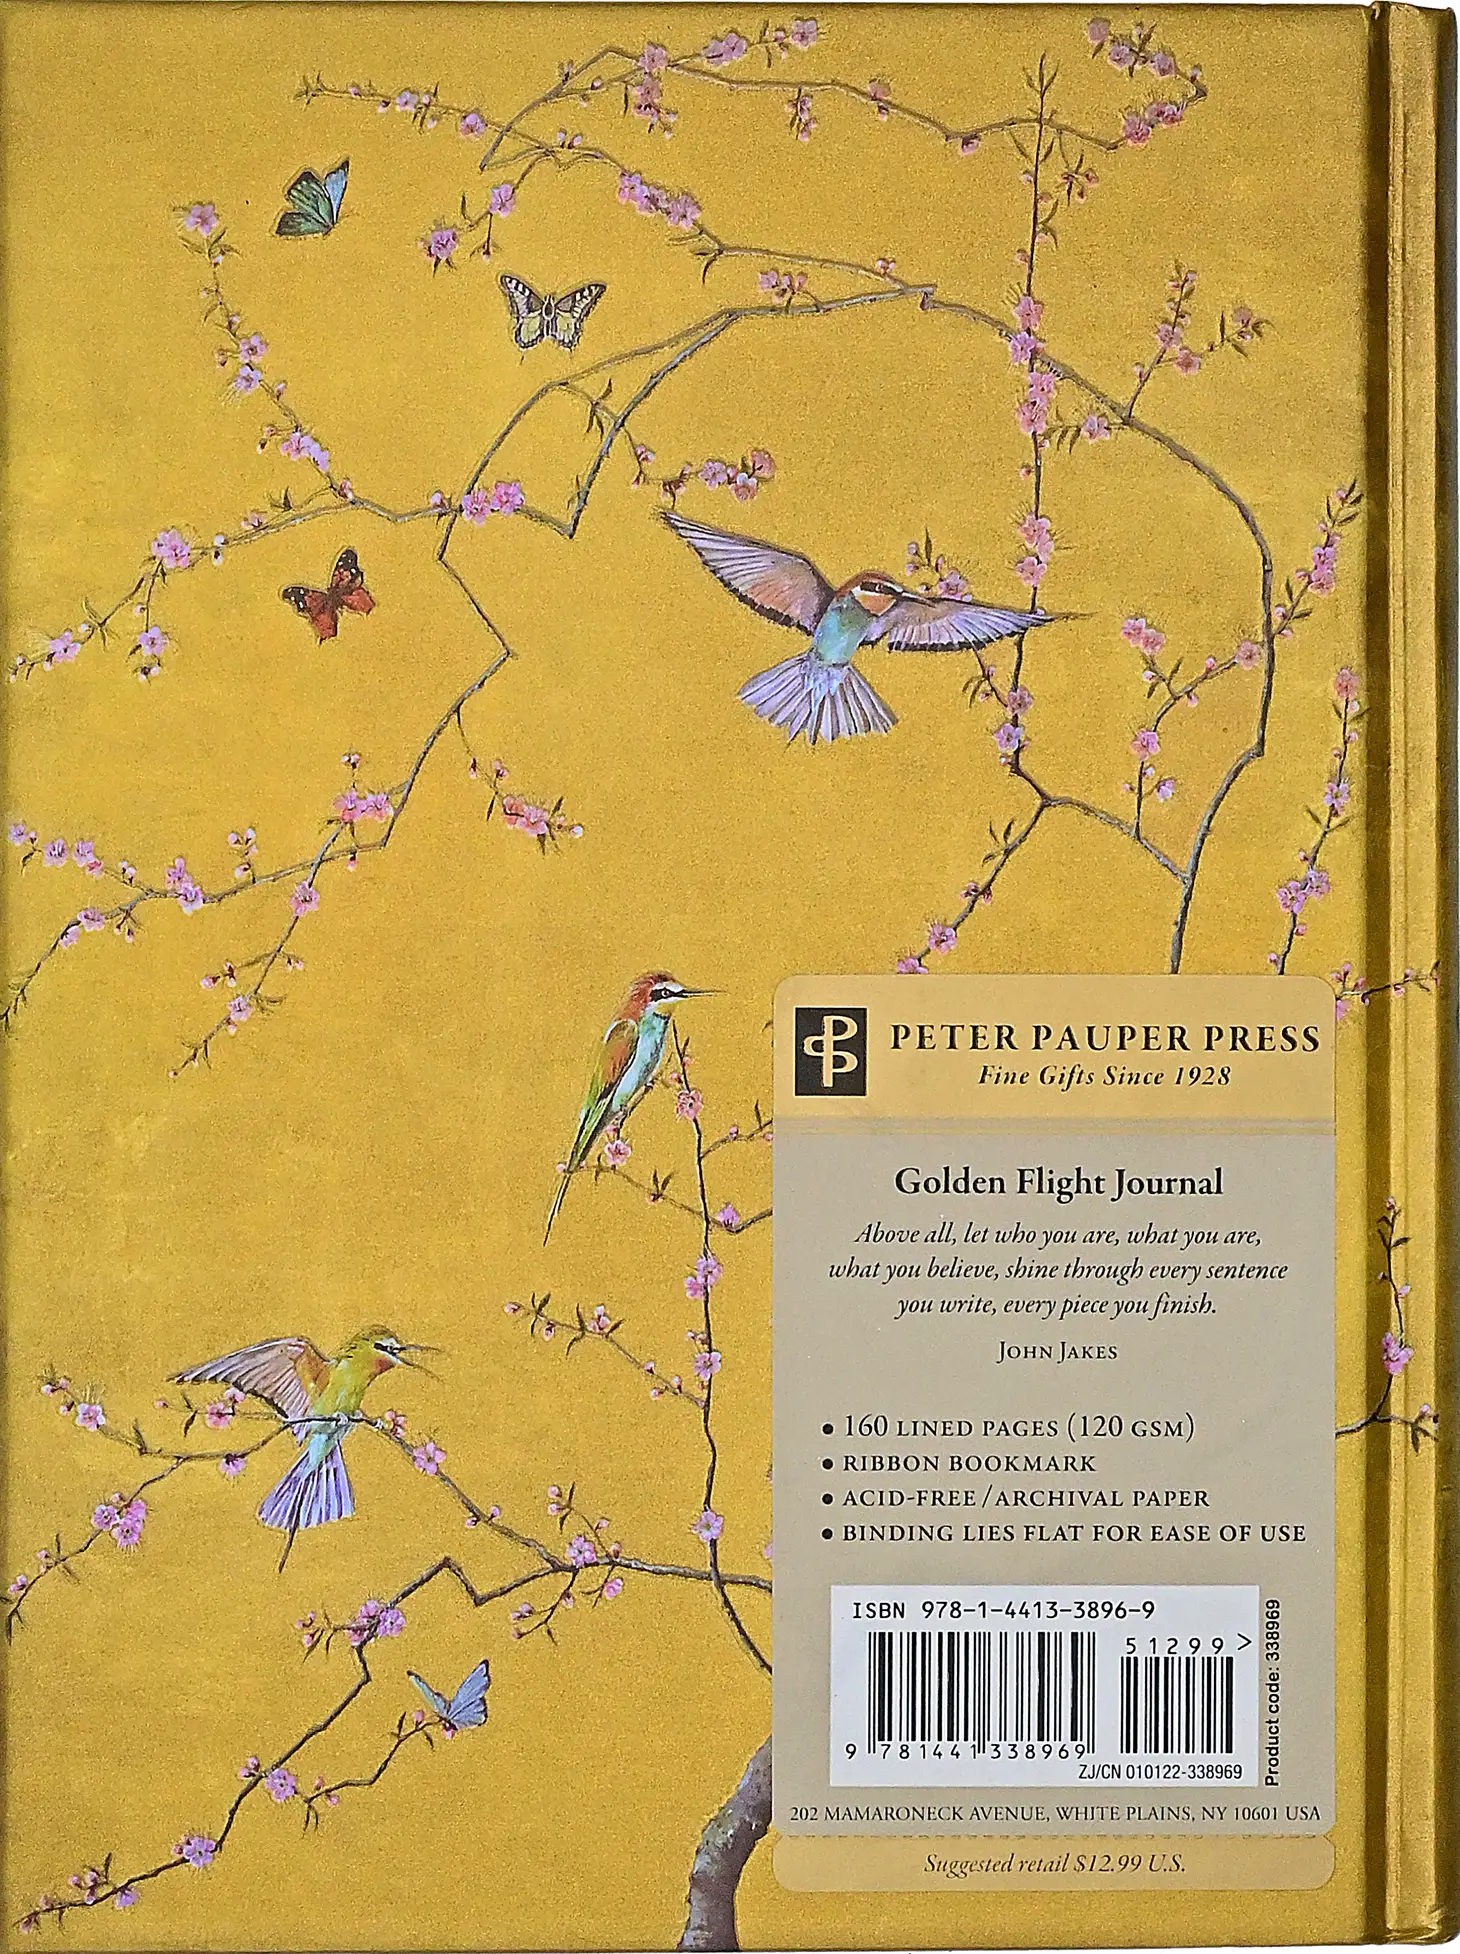 Golden Flight Journal - Tortuna